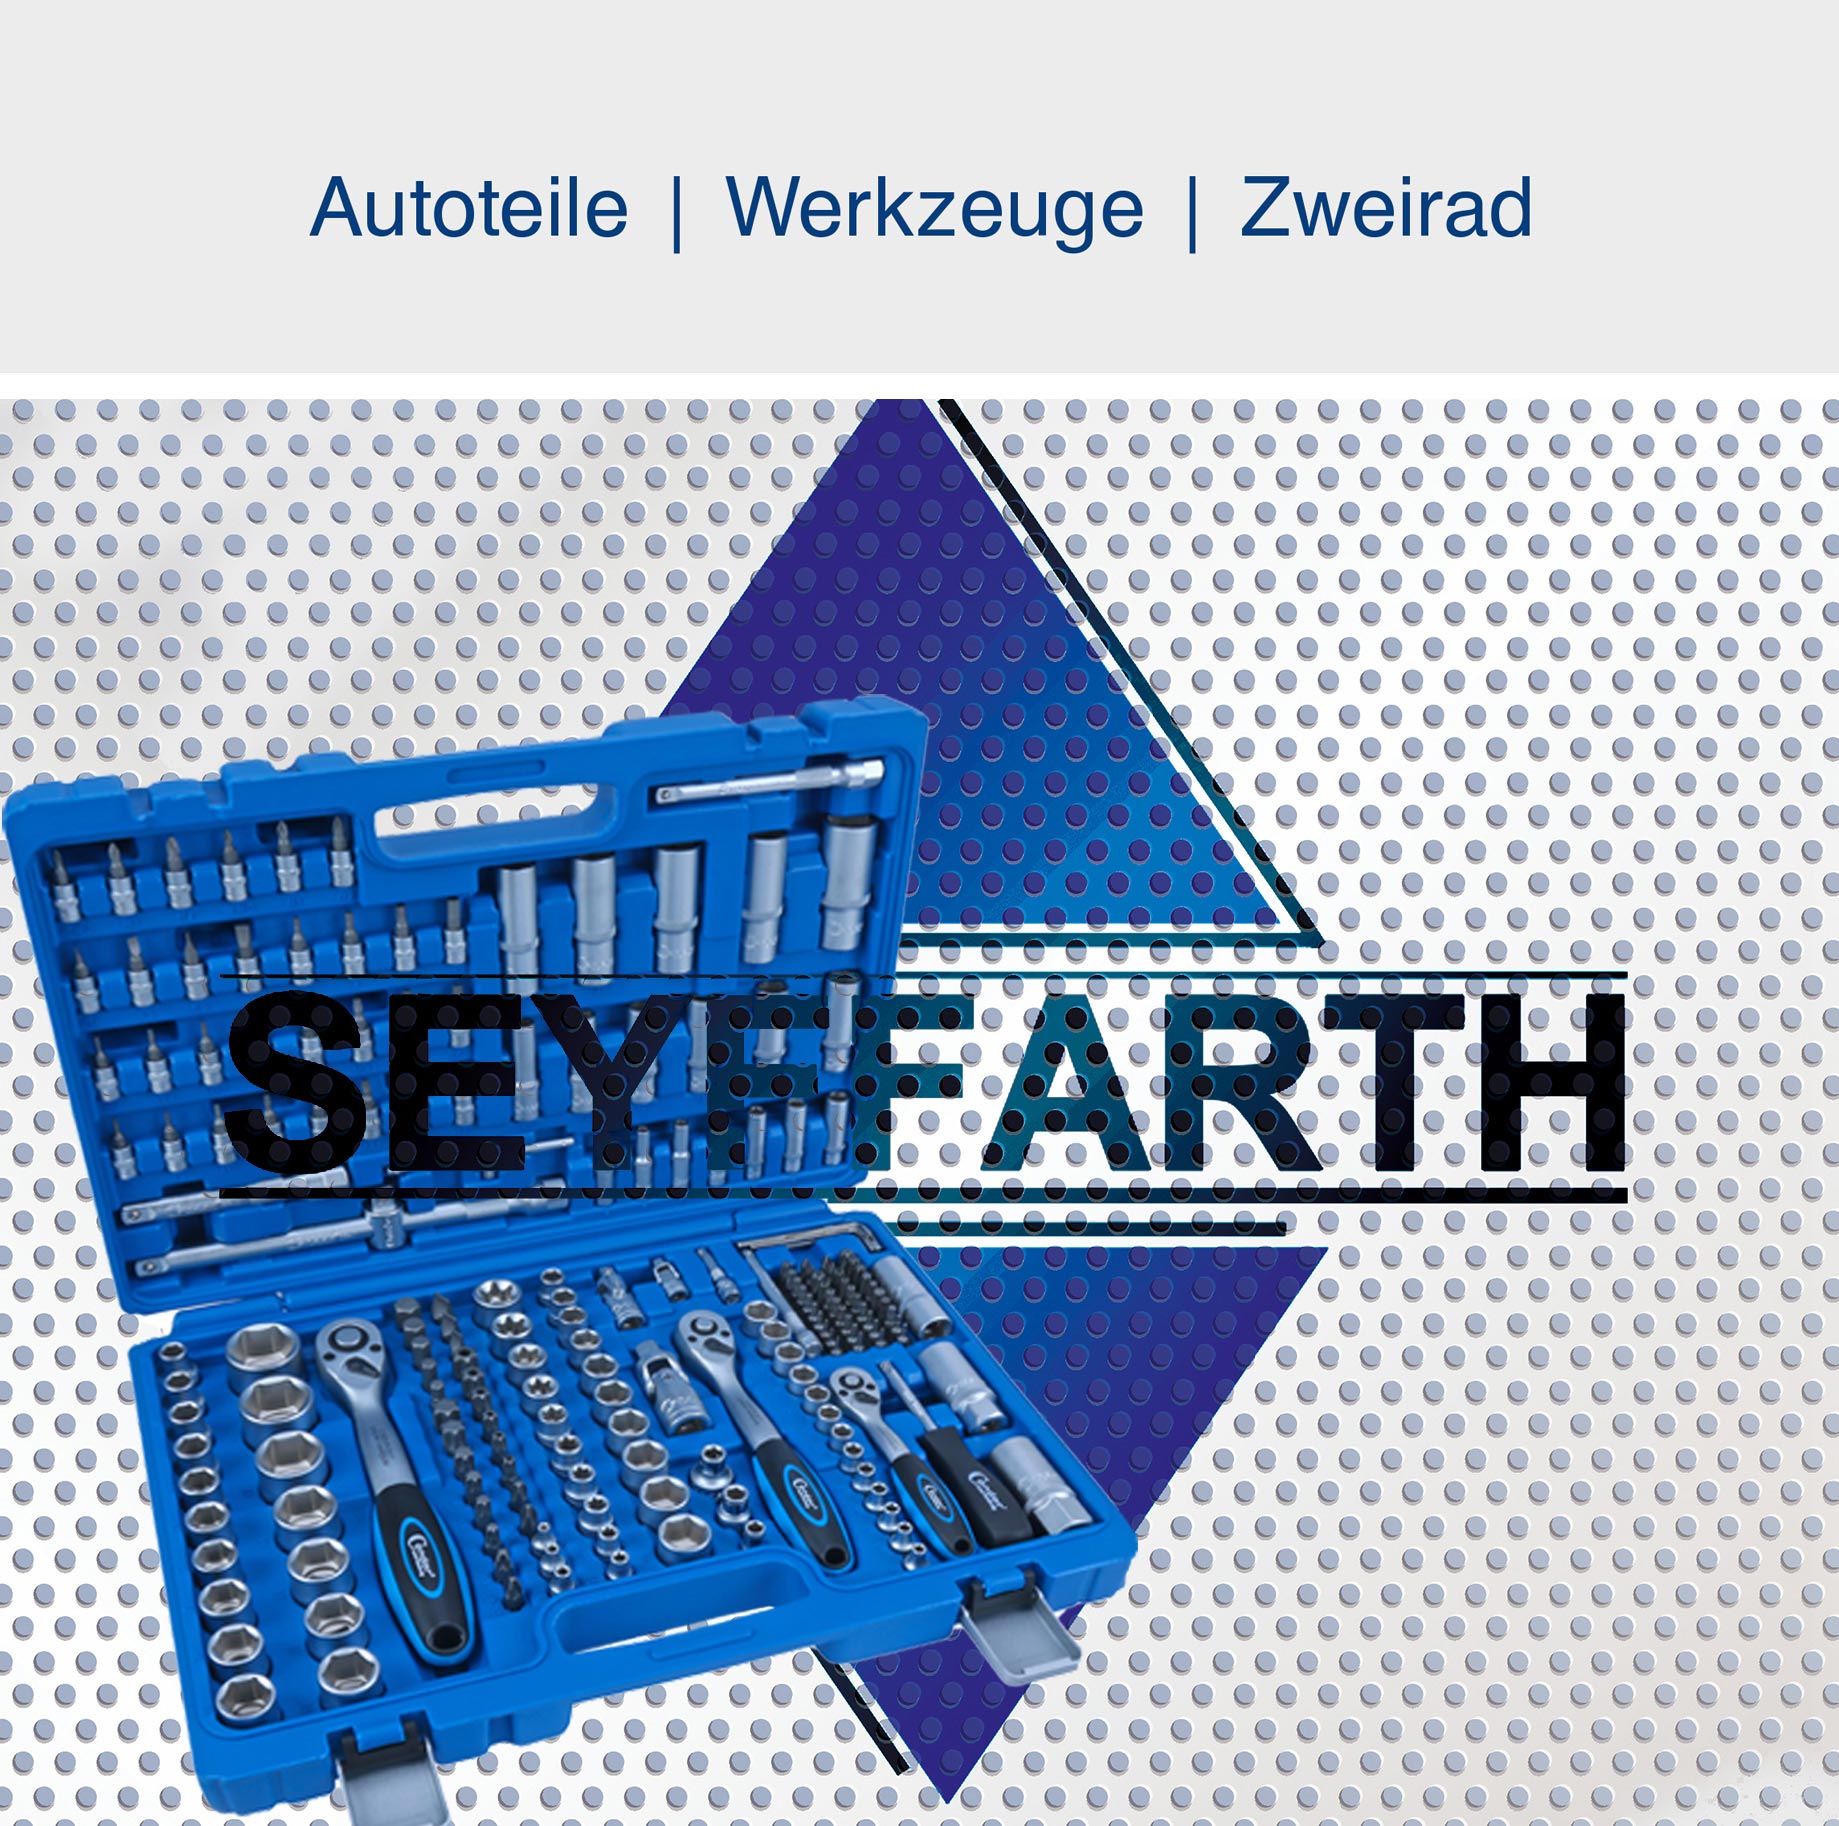 Seyffarth Autoteile, Werkzeug, Zweirad in Langenfeld